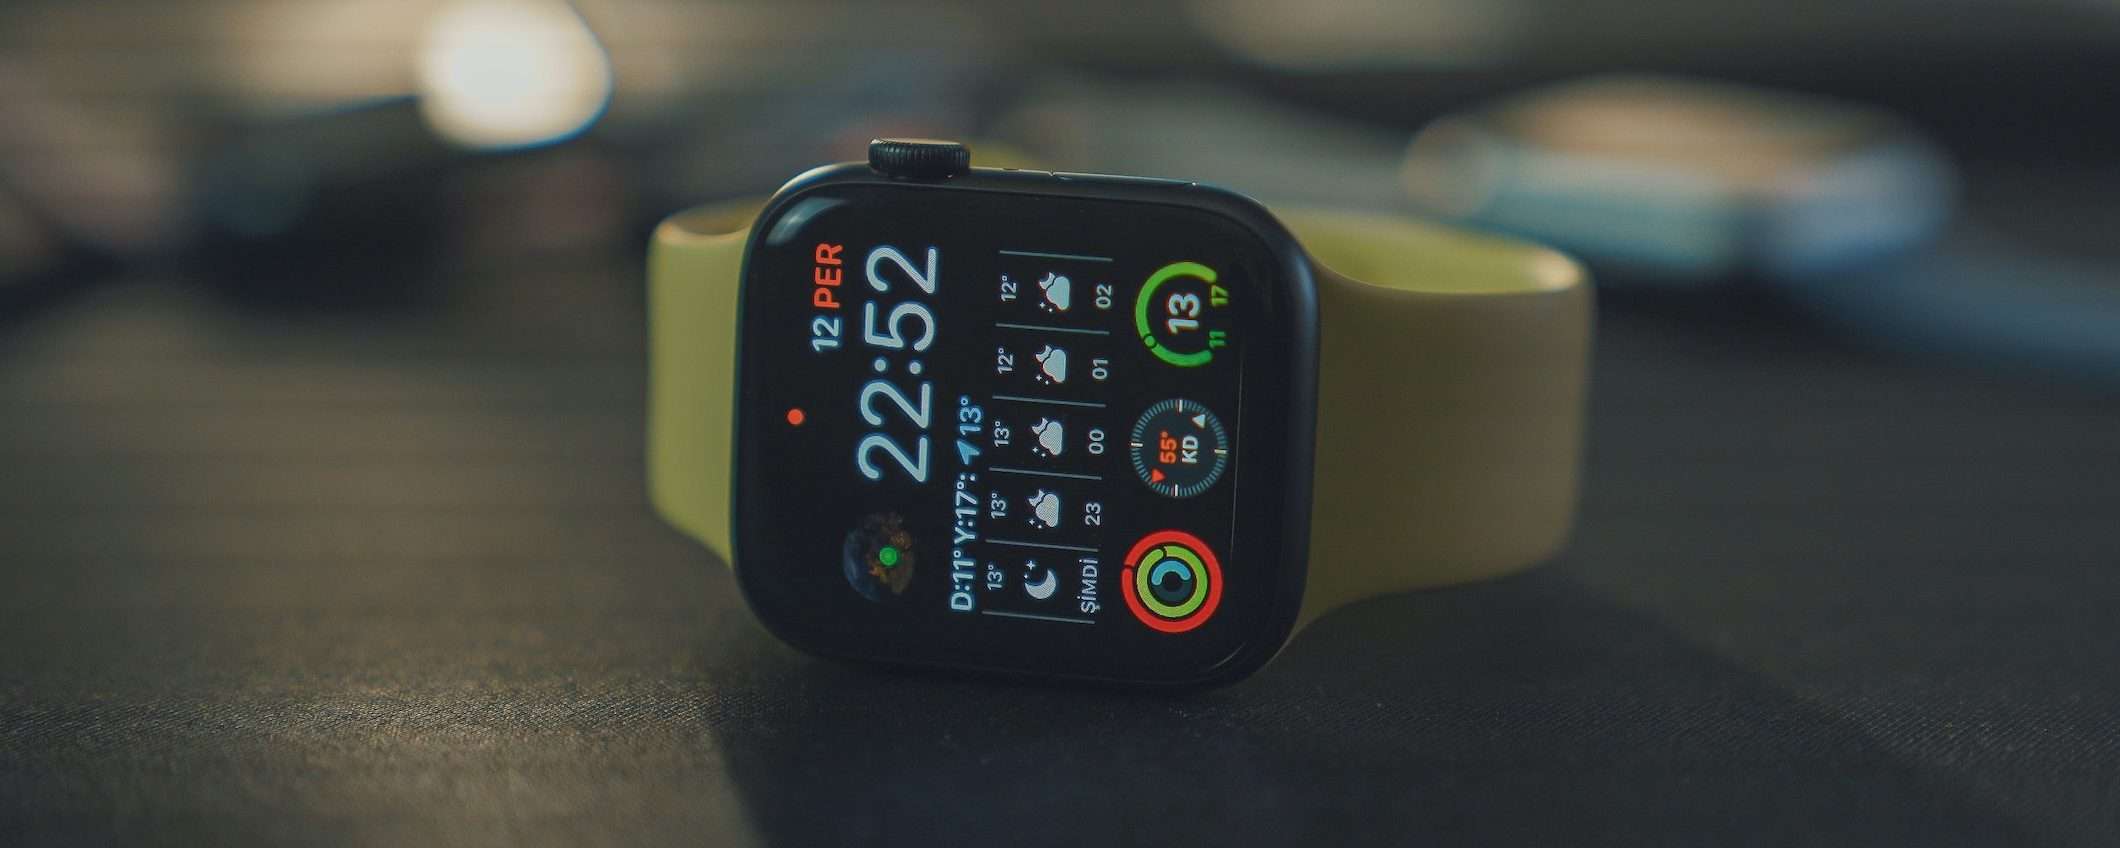 Apple Watch svela che chi lo indossa non dorme a sufficienza